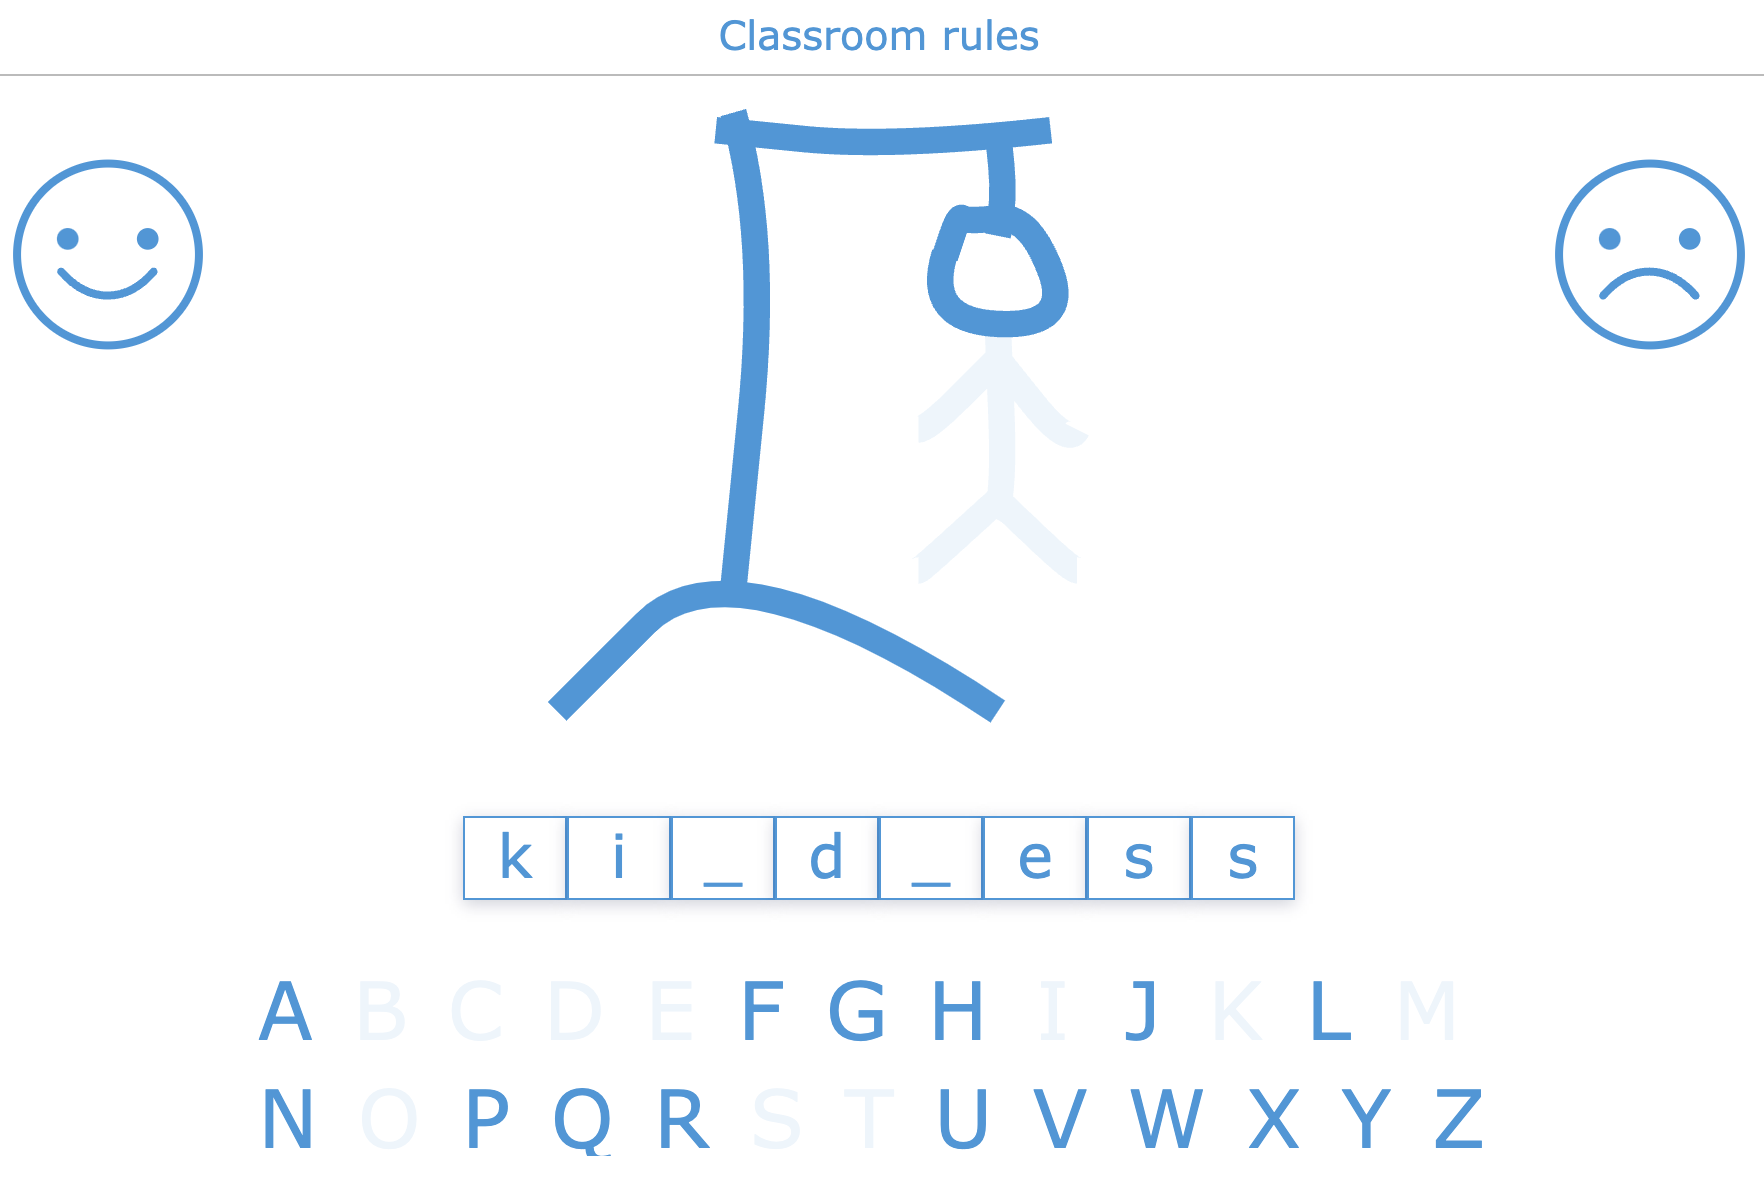 Bookwidgets classroom rules hangman